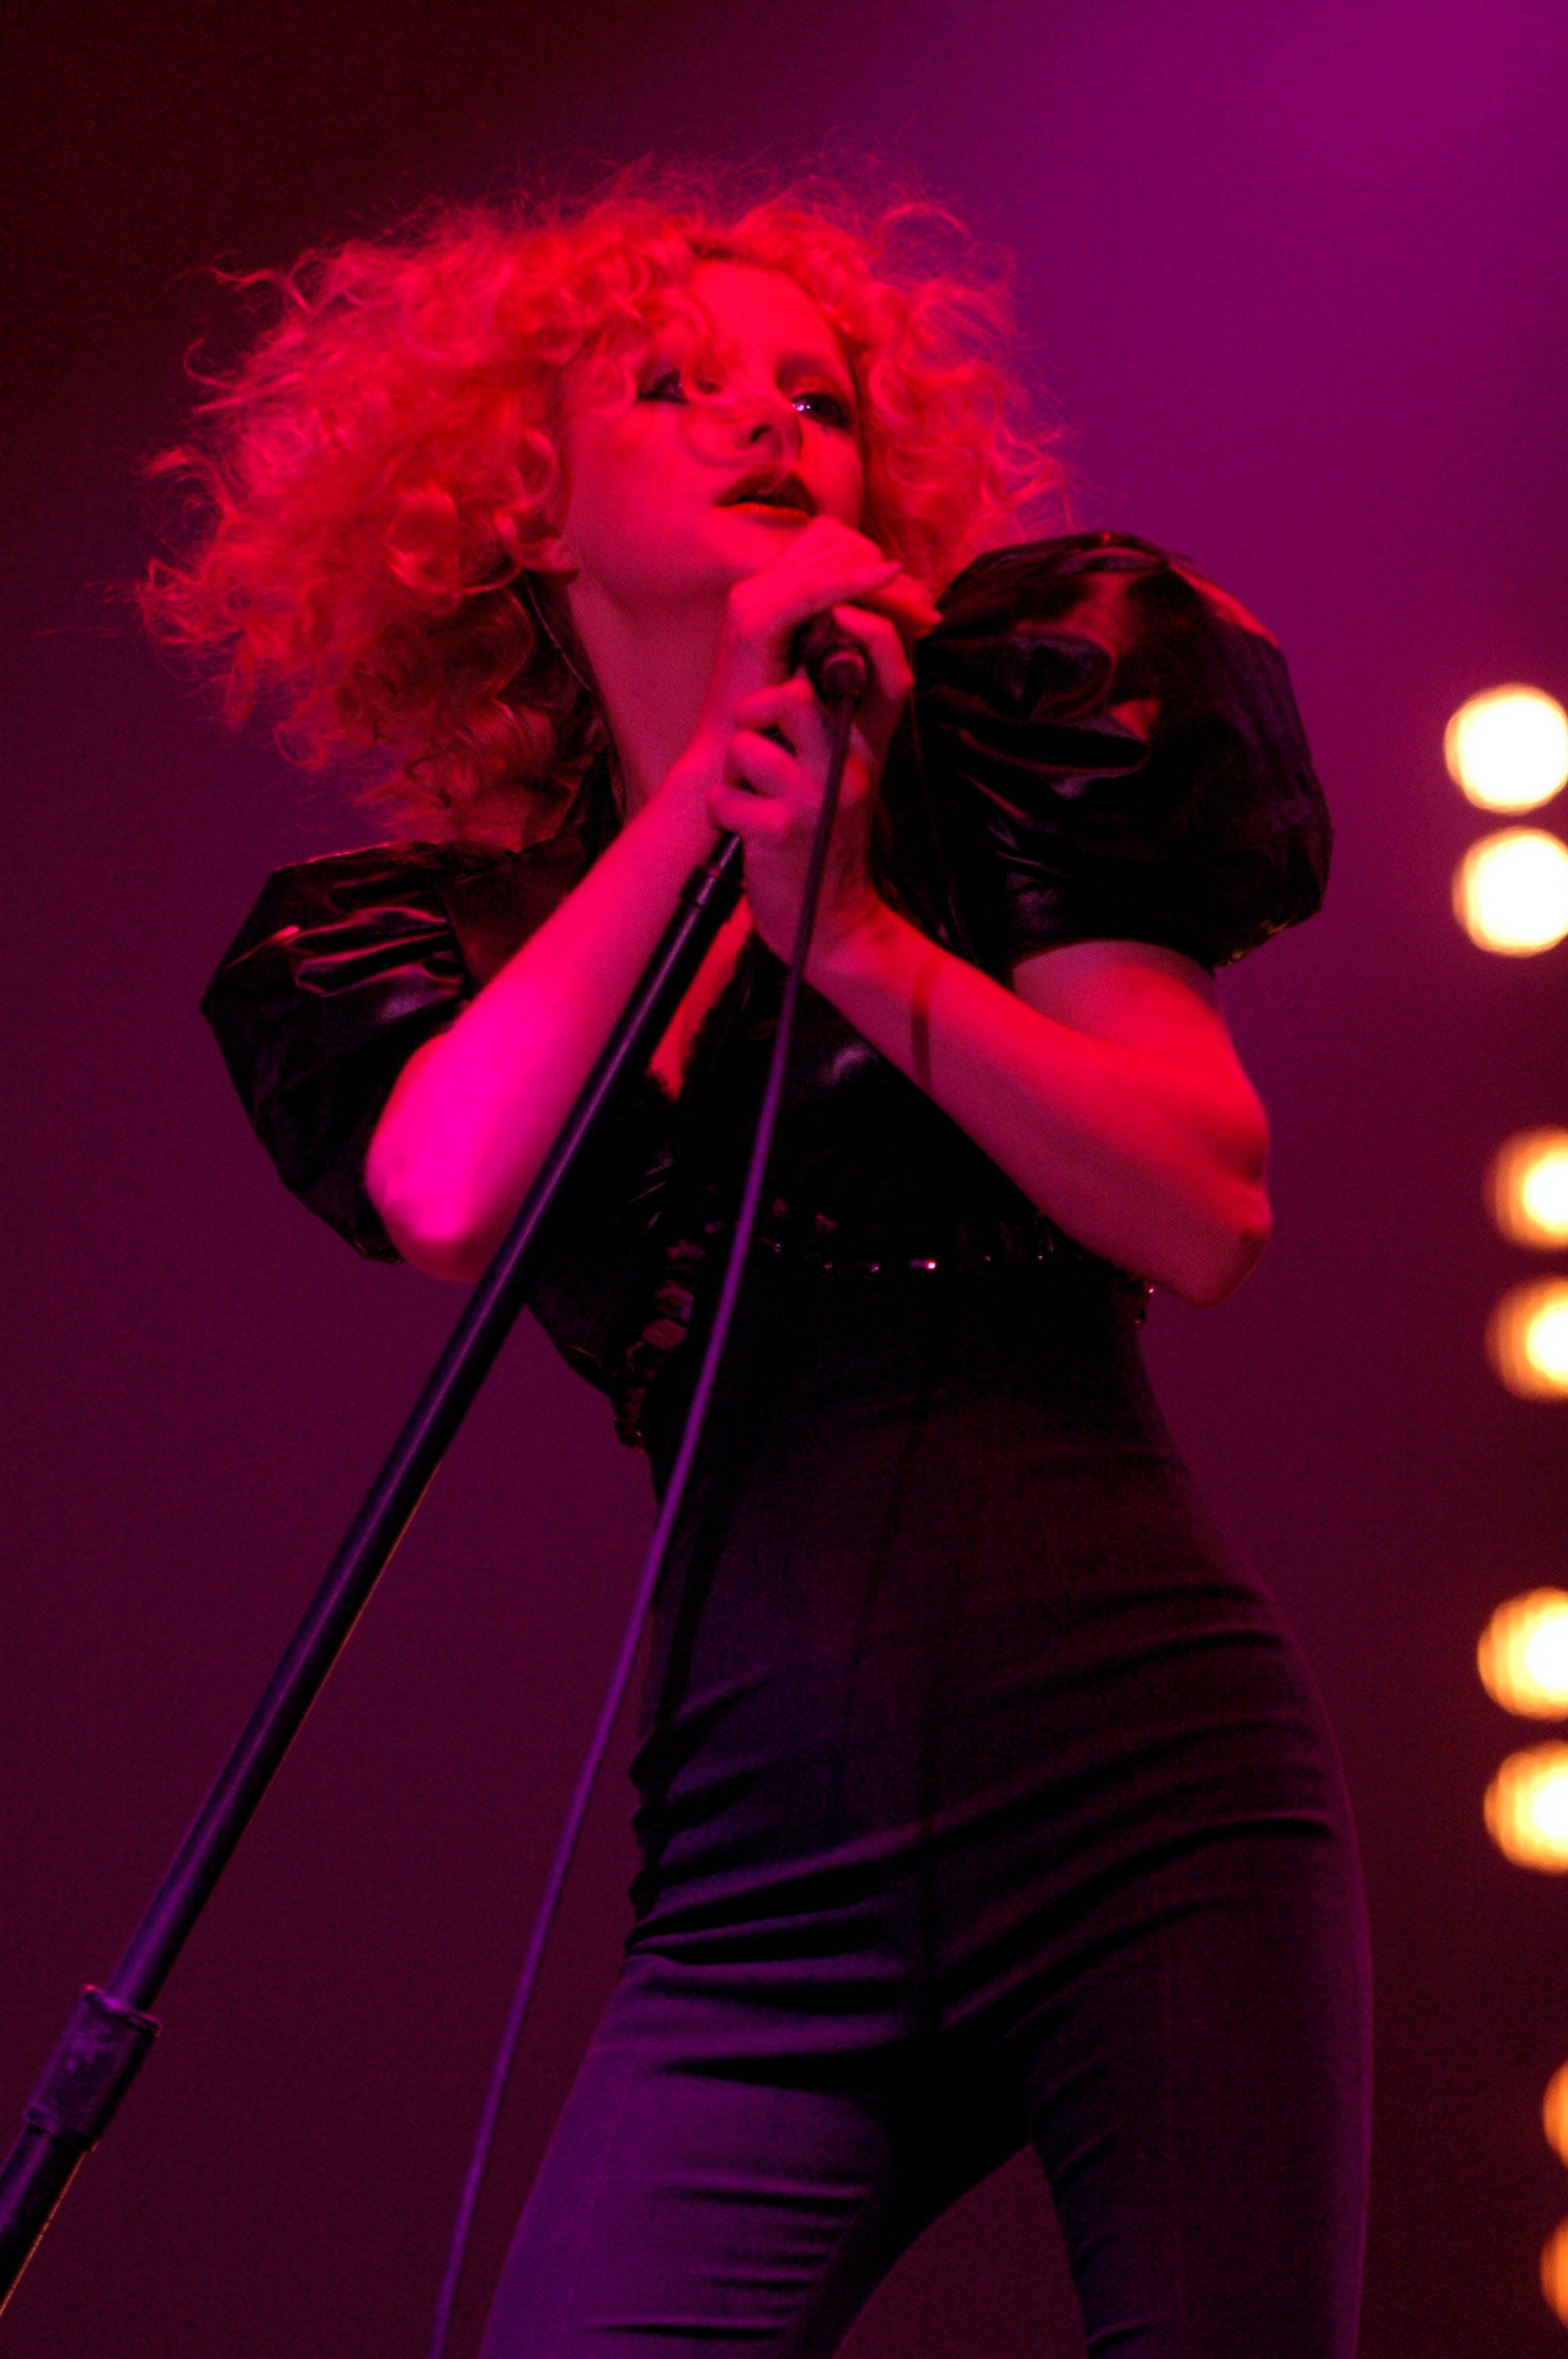 ‘It got quite intense’: Goldfrapp in concert in 2005